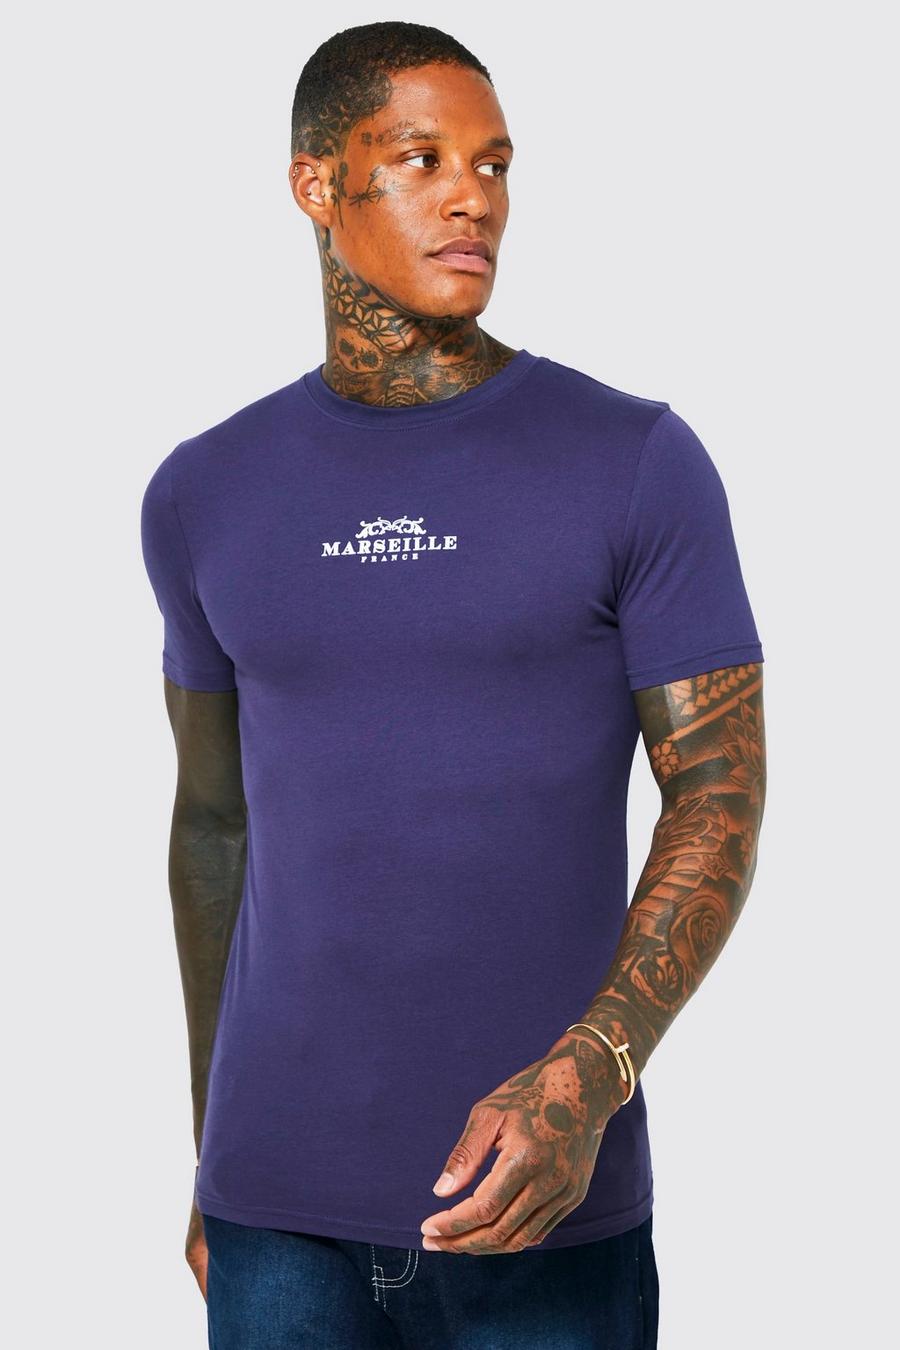 Camiseta ajustada al músculo con estampado gráfico de Marseille, Navy azul marino